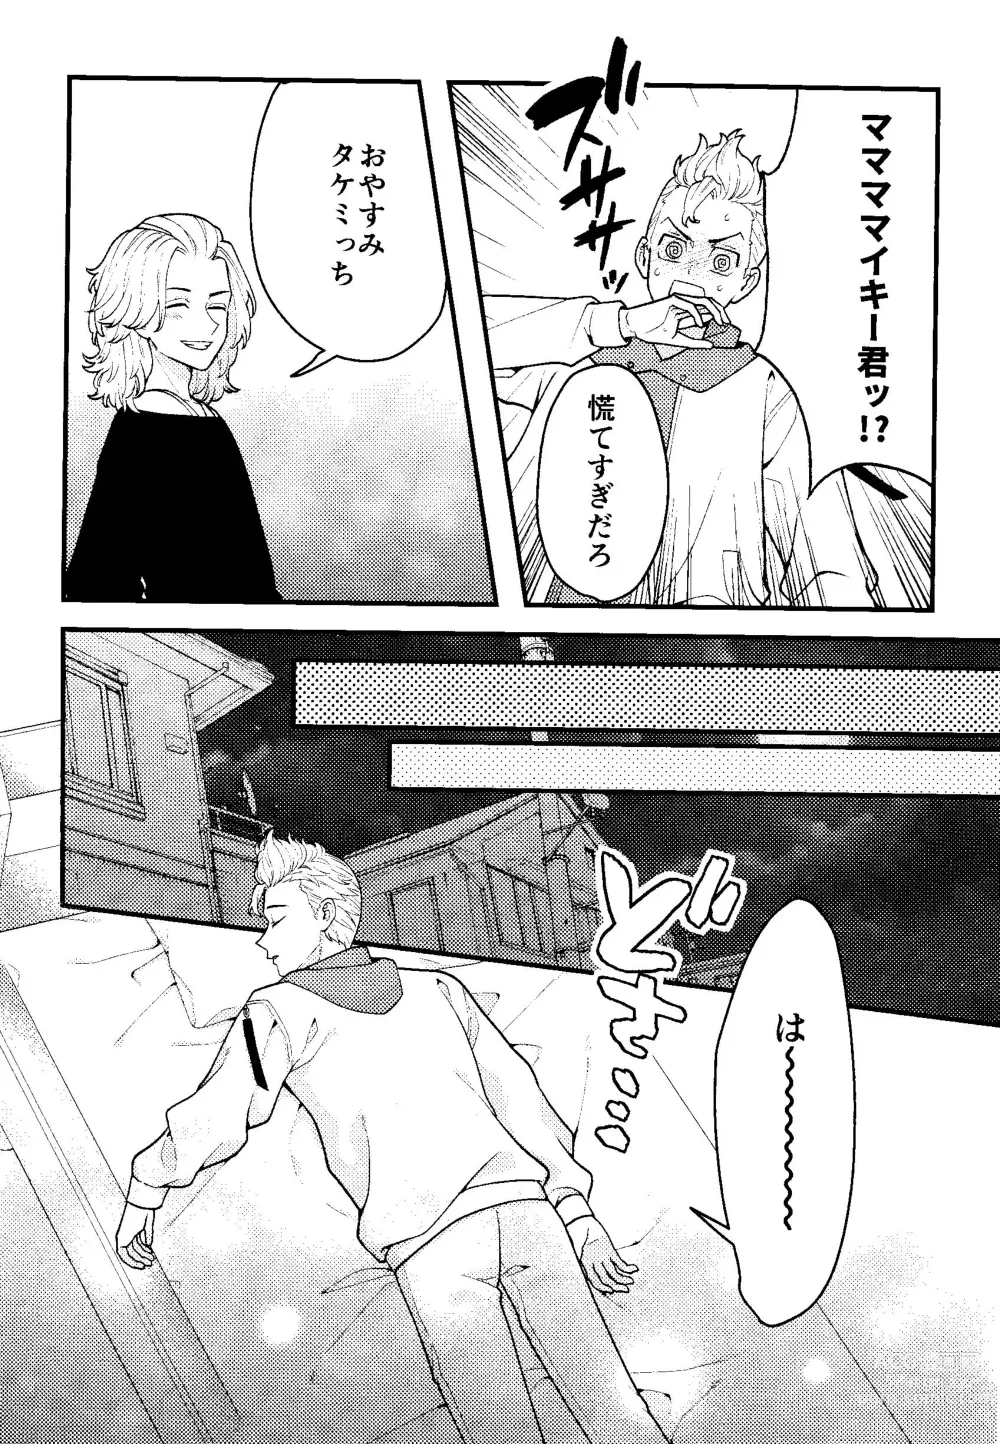 Page 5 of doujinshi Jitsuwa kaihatsu sumidesu